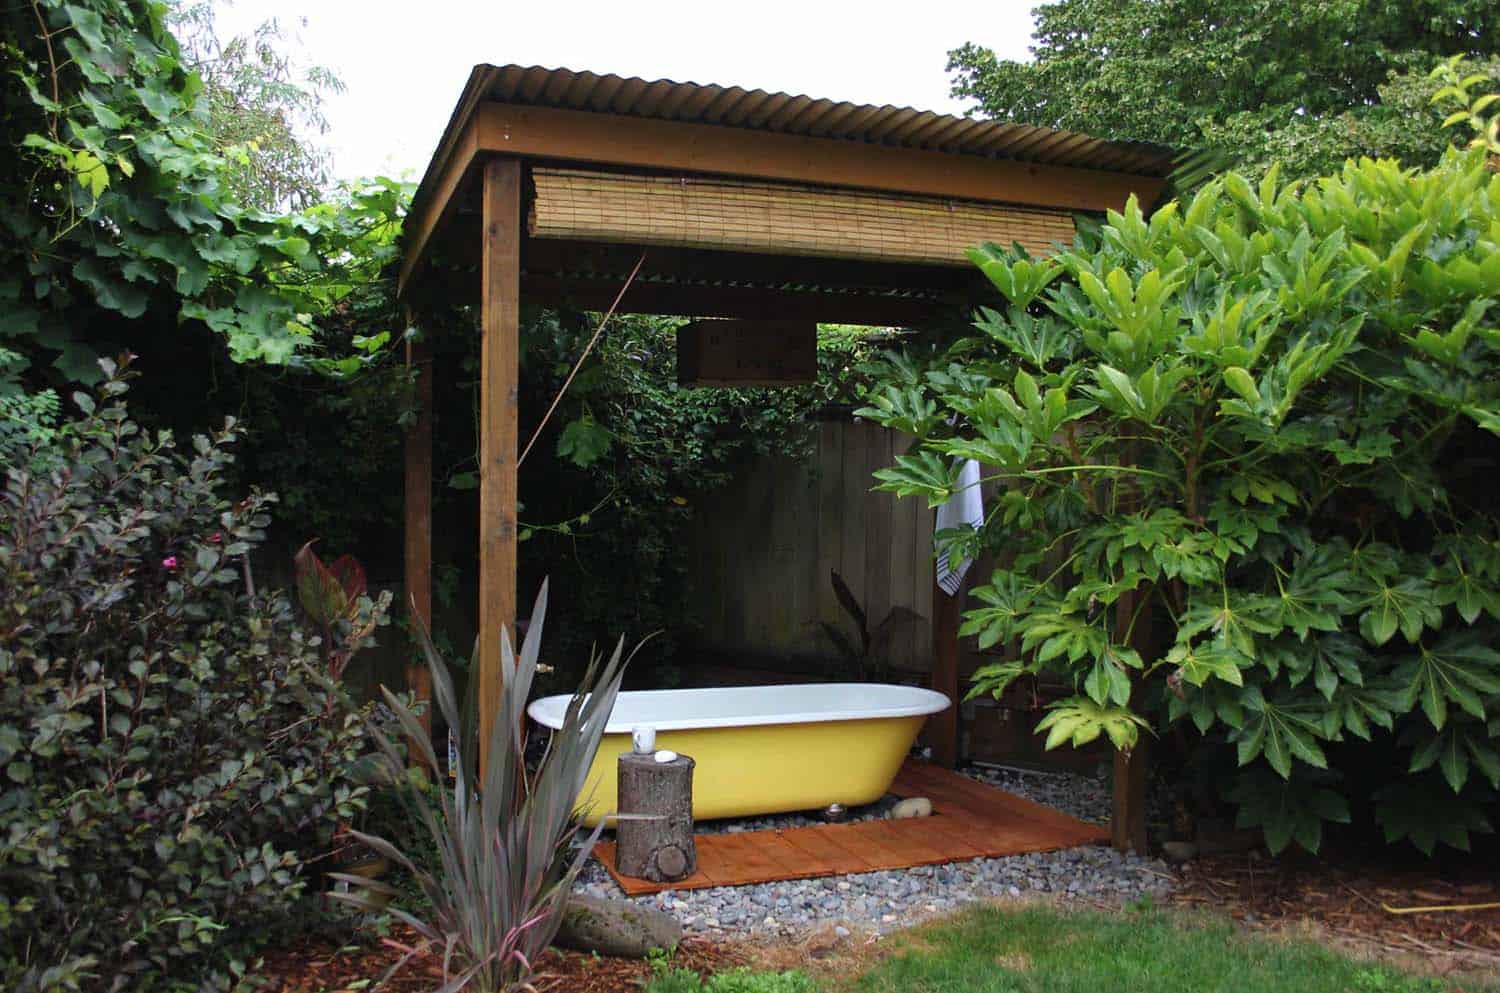 outdoor-bathtub